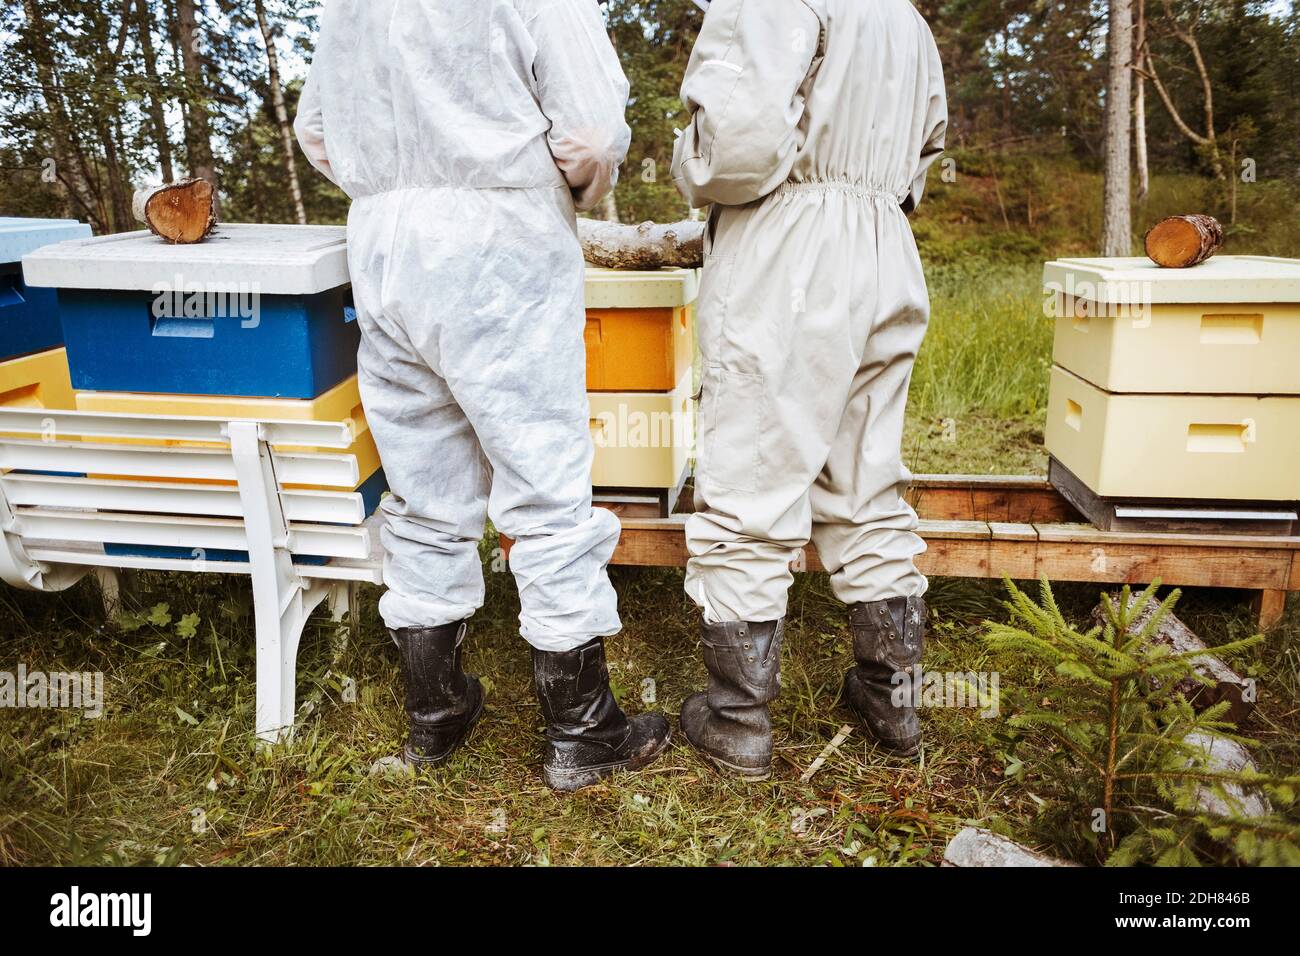 Vue arrière des apiculteurs se trouvant près des ruches sur le terrain Banque D'Images